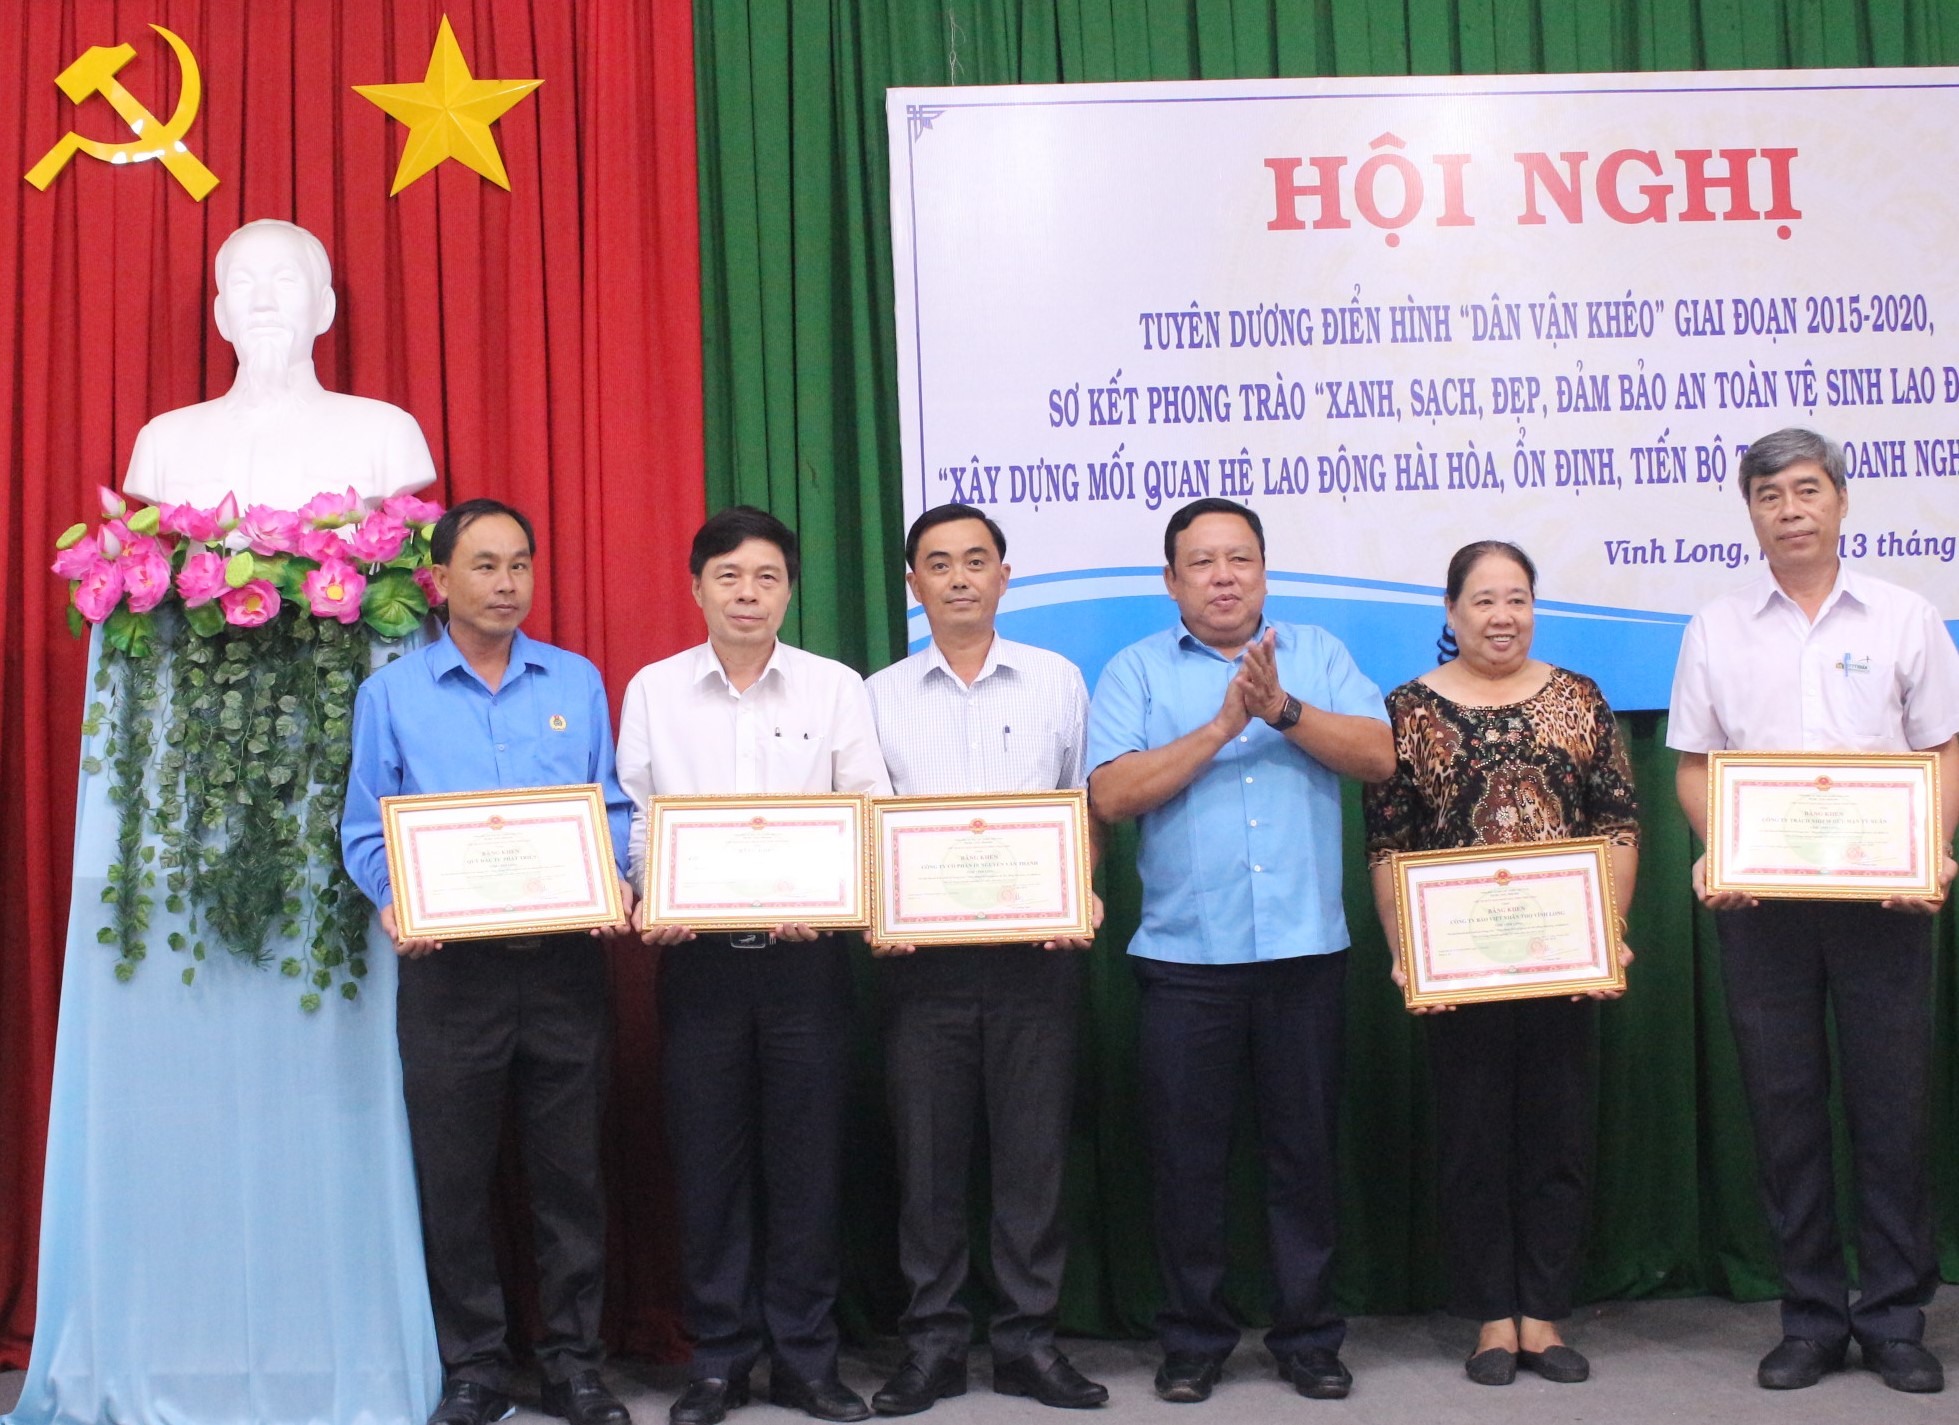 Ông Nguyễn Văn Liệt- Phó Chủ tịch UBND tỉnh trao bằng khen UBND tỉnh cho các tập thể có thành tích xuất sắc trong “Xây dựng mối quan hệ lao động hài hòa, ổn định và tiến bộ trong doanh nghiệp” 3 năm liền (2017- 2019)